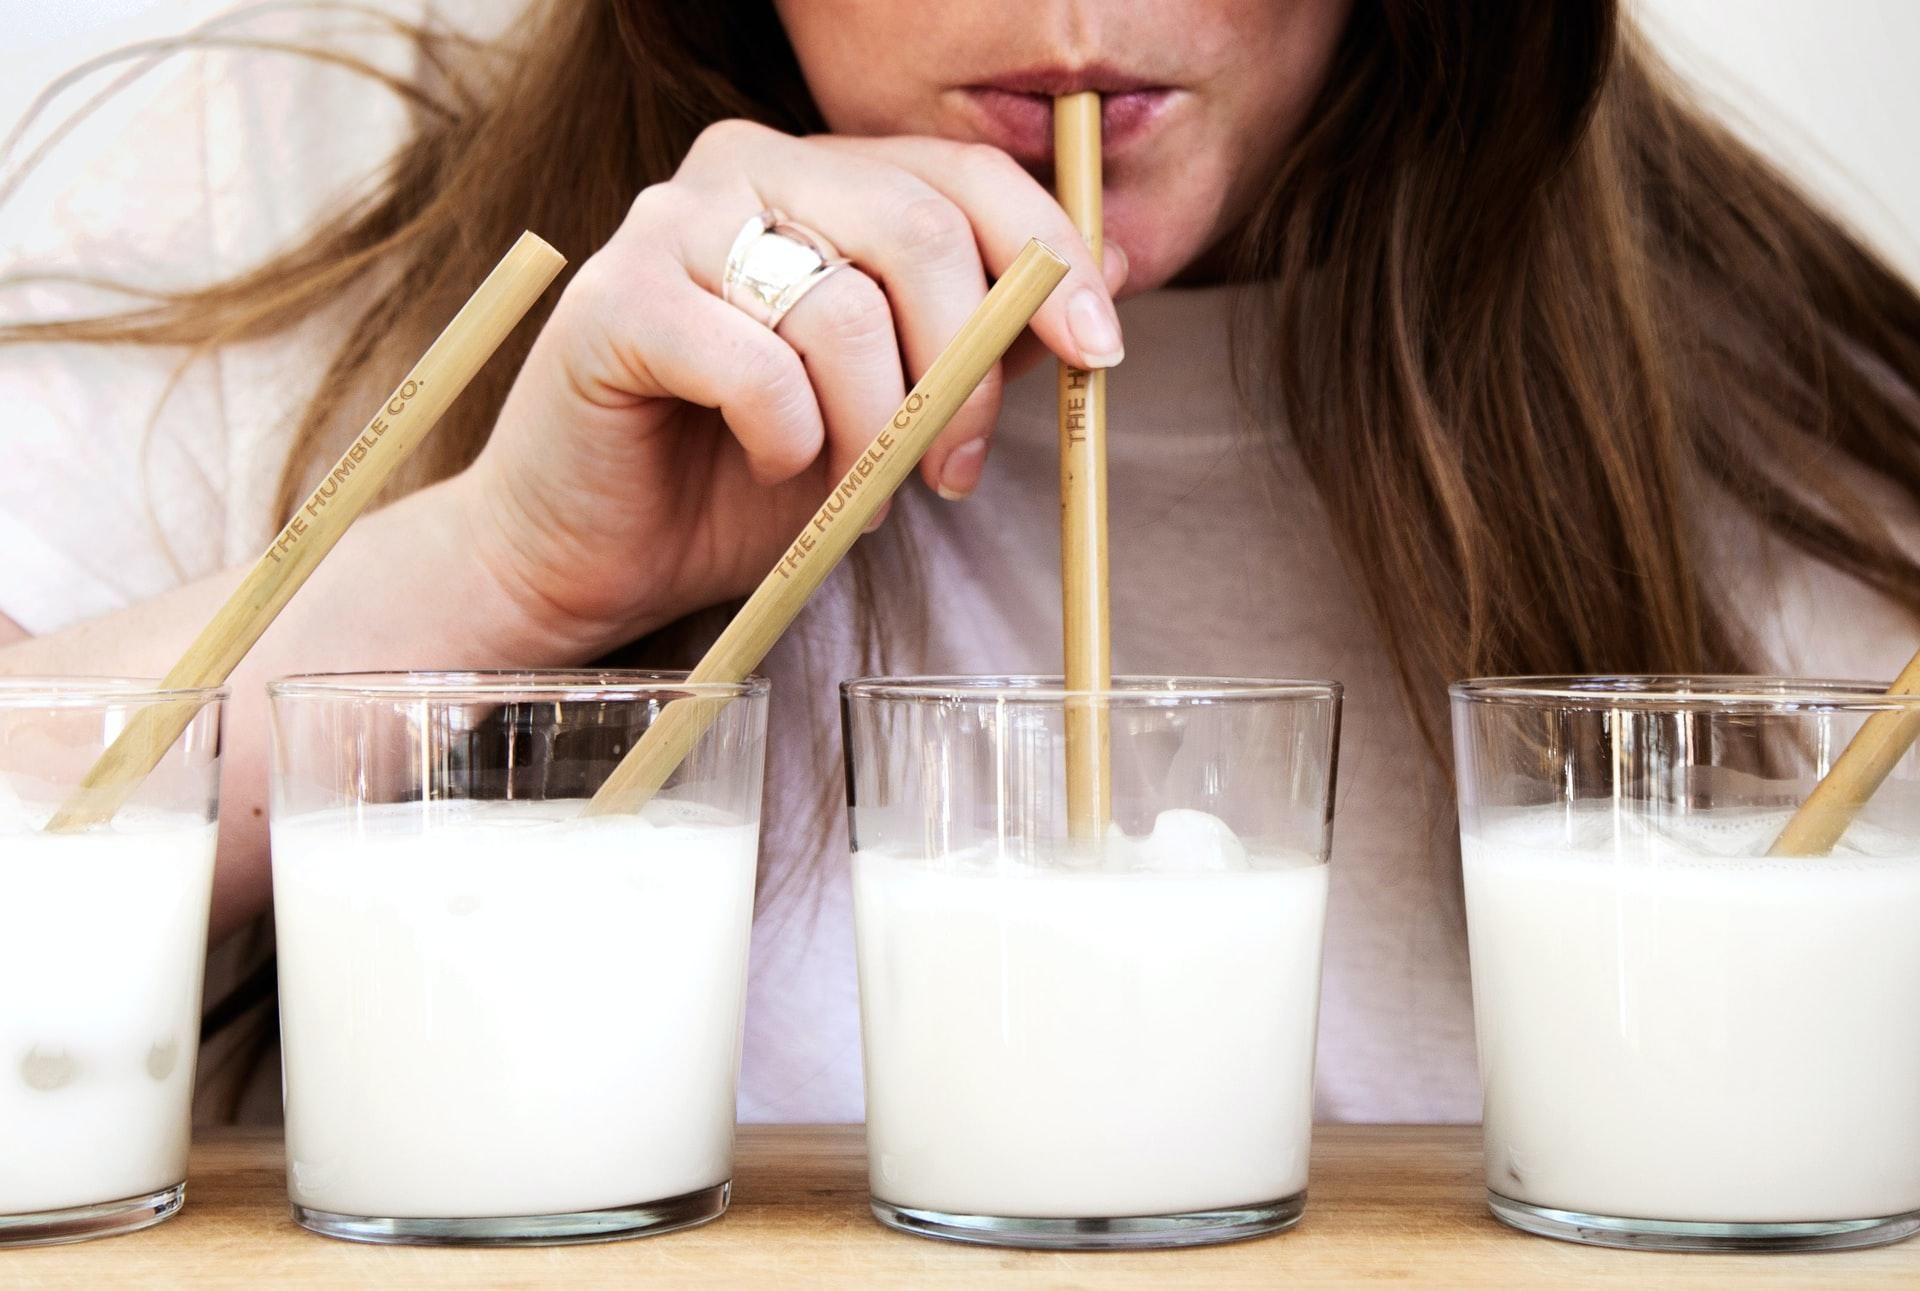 Действительно ли пастеризованные молочные продукты менее полезны